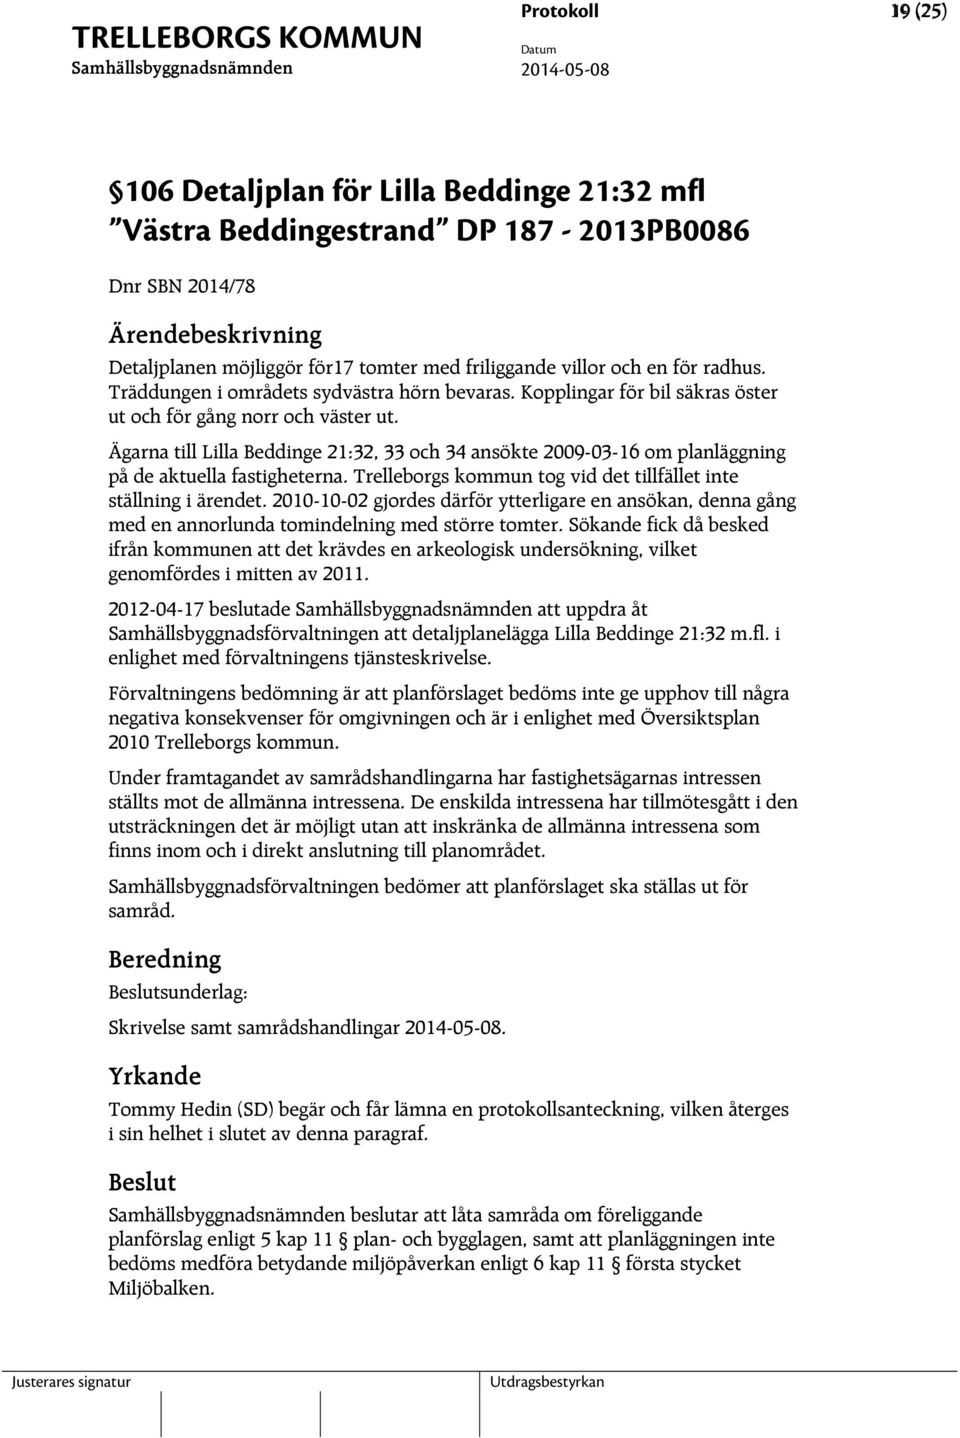 Ägarna till Lilla Beddinge 21:32, 33 och 34 ansökte 2009-03-16 om planläggning på de aktuella fastigheterna. Trelleborgs kommun tog vid det tillfället inte ställning i ärendet.